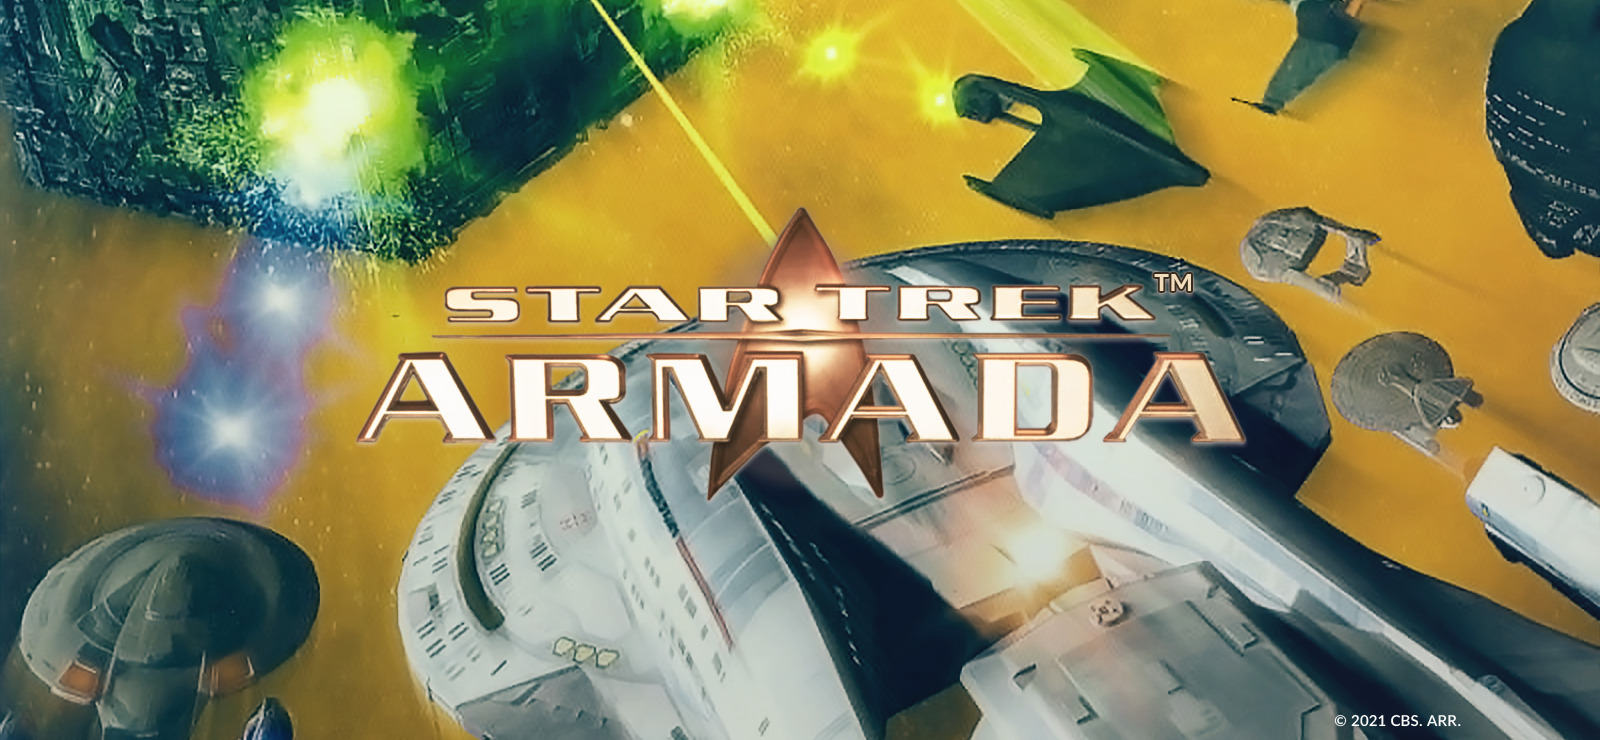 star trek armada full game free